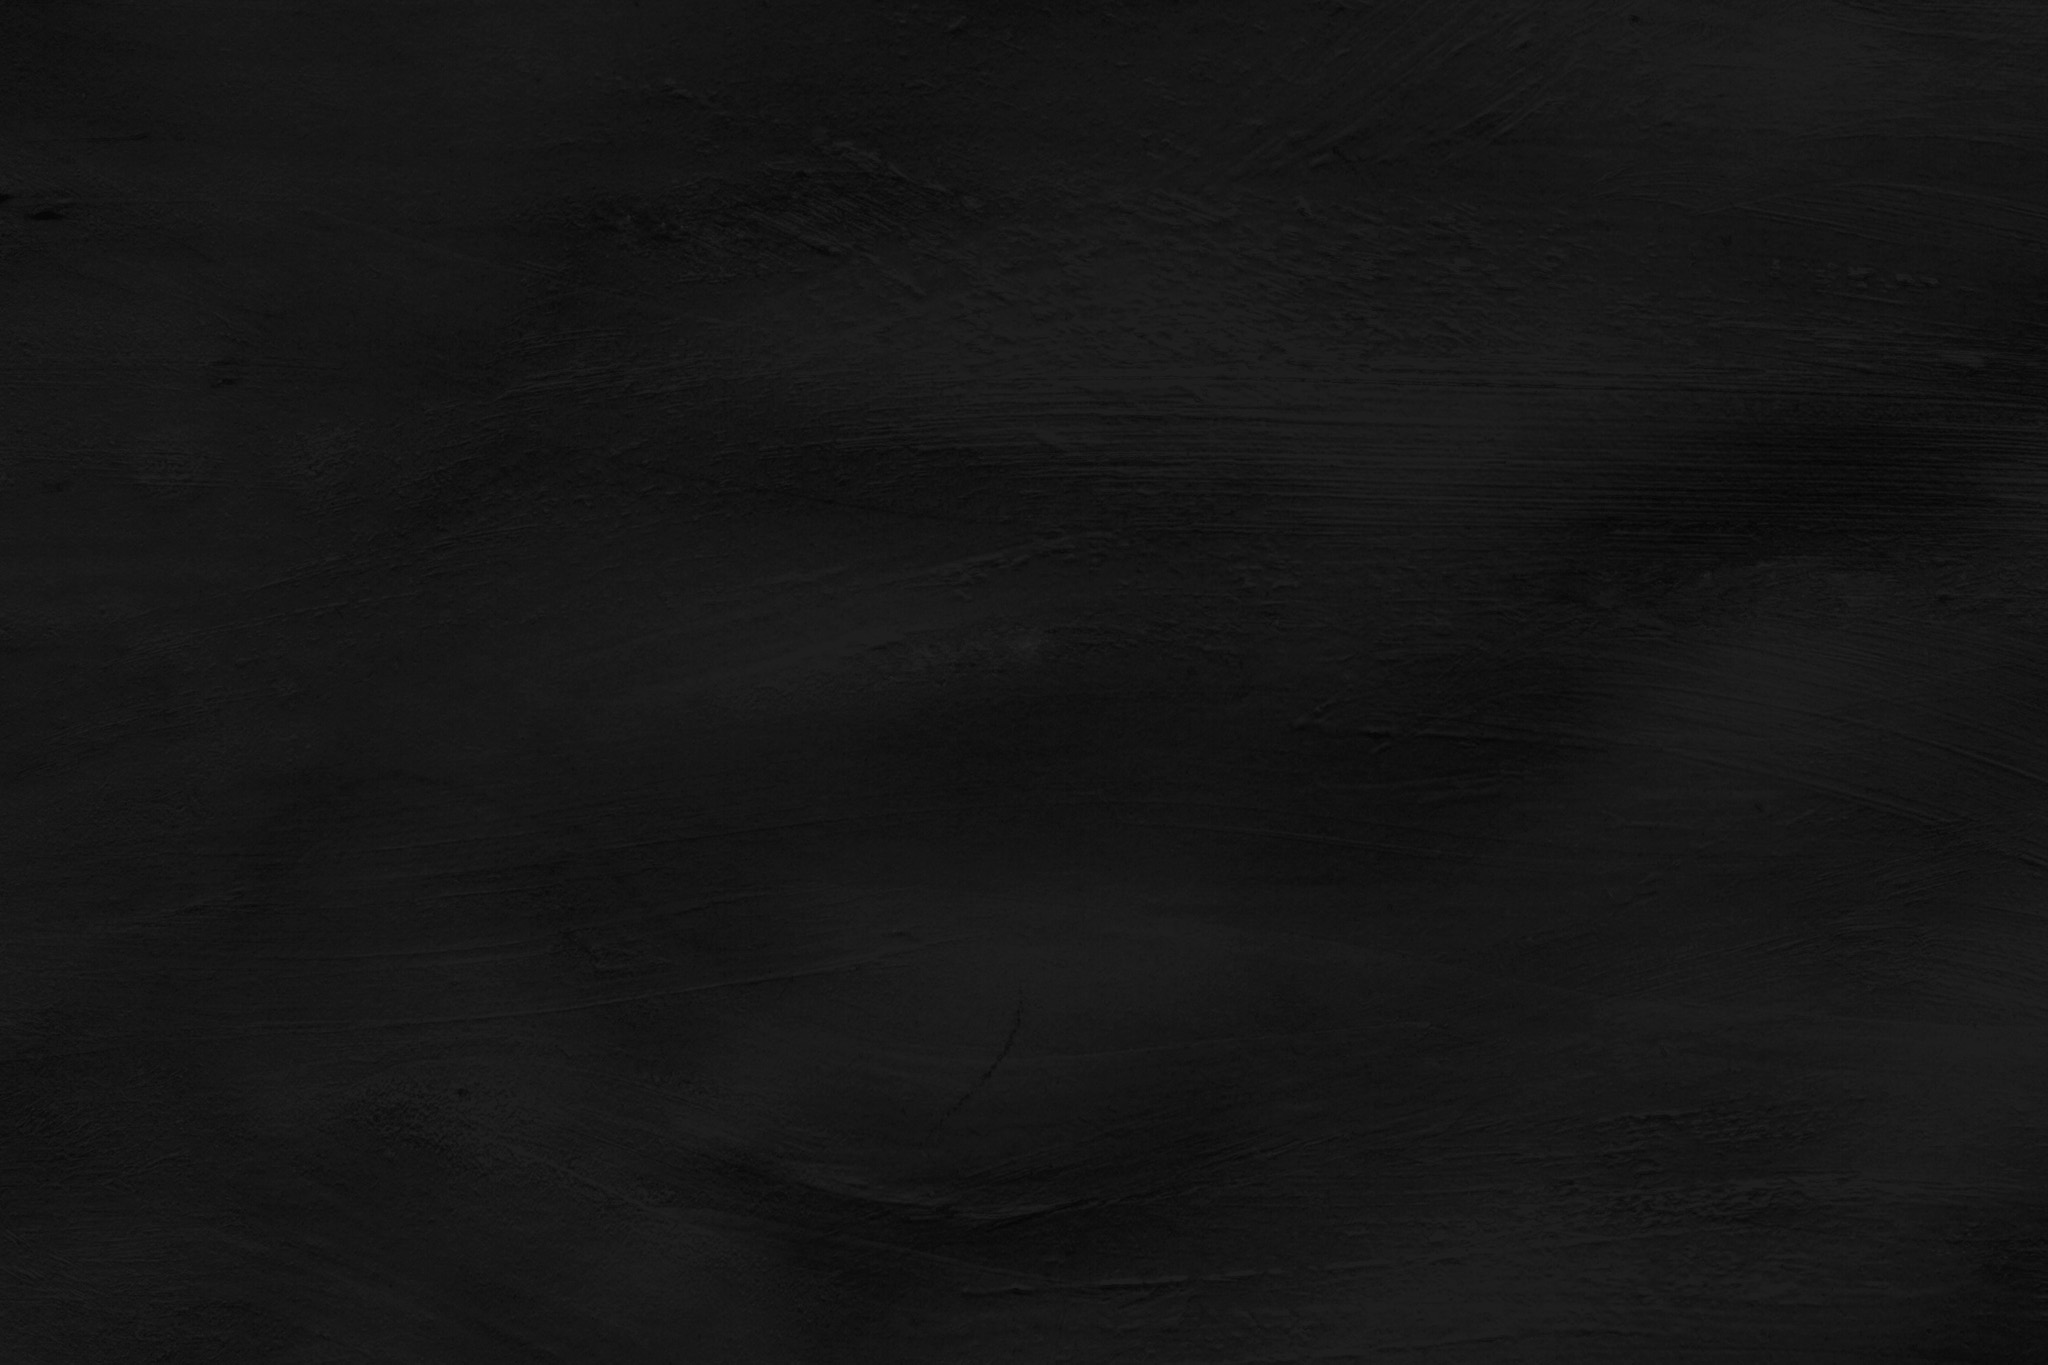 シンプルな黒色の無地の背景 の画像素材を無料ダウンロード 1 背景フリー素材 Beiz Images